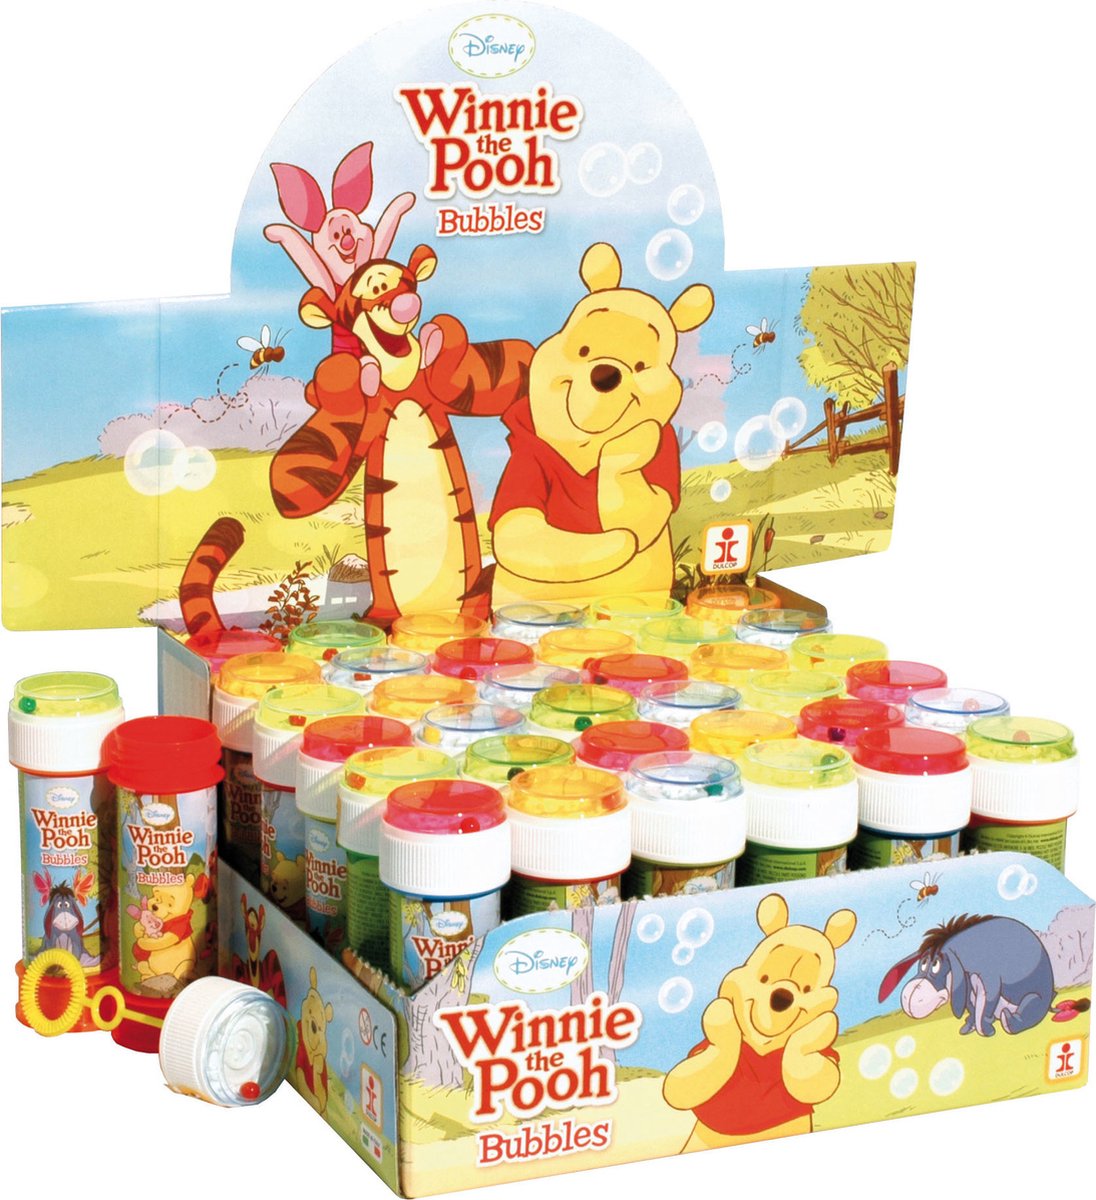 4x Winnie de Poeh bellenblaas flesjes met spelletje 60 ml voor kinderen - Uitdeelspeelgoed - Grabbelton speelgoed